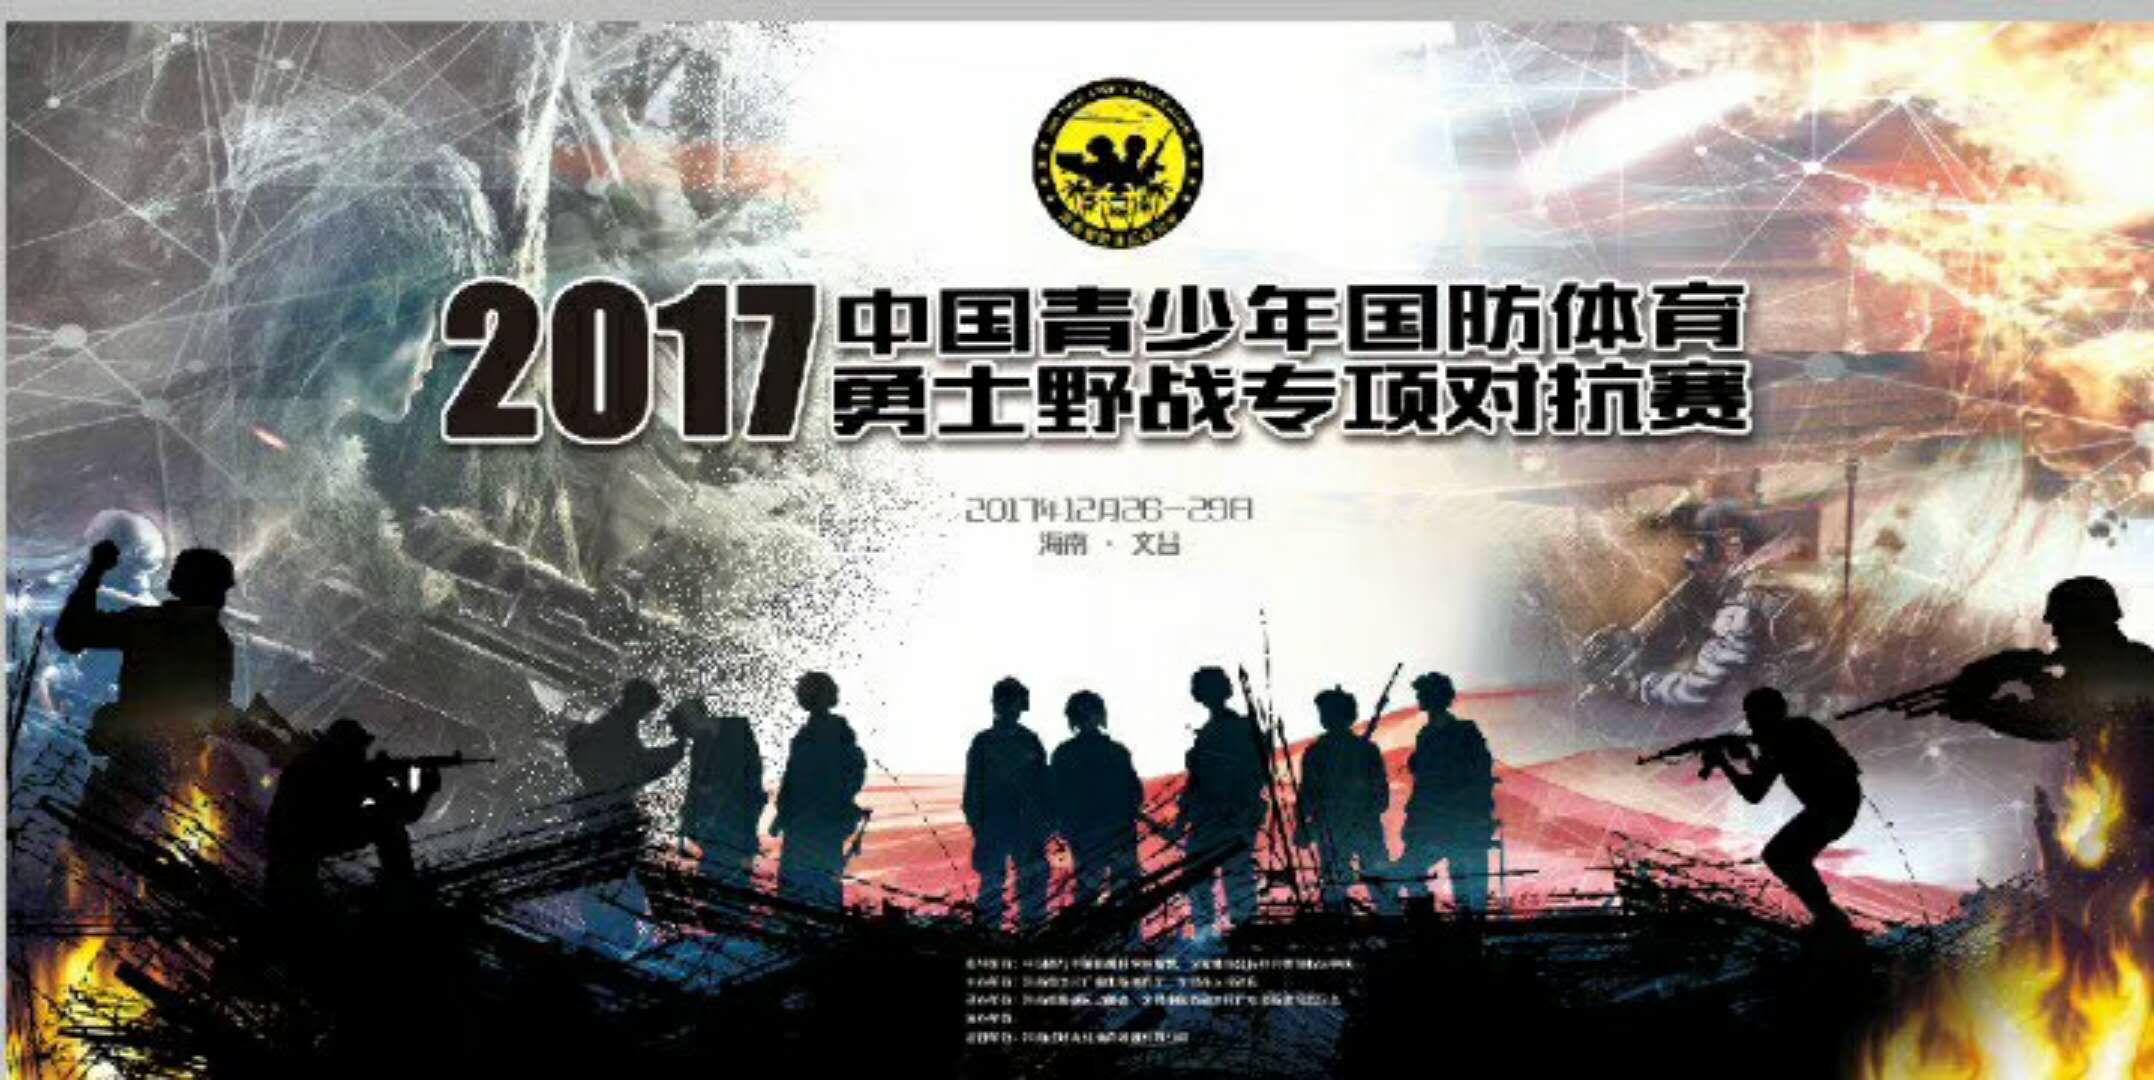 2017中国青少年国防体育·勇士野战对抗赛将在文昌举行